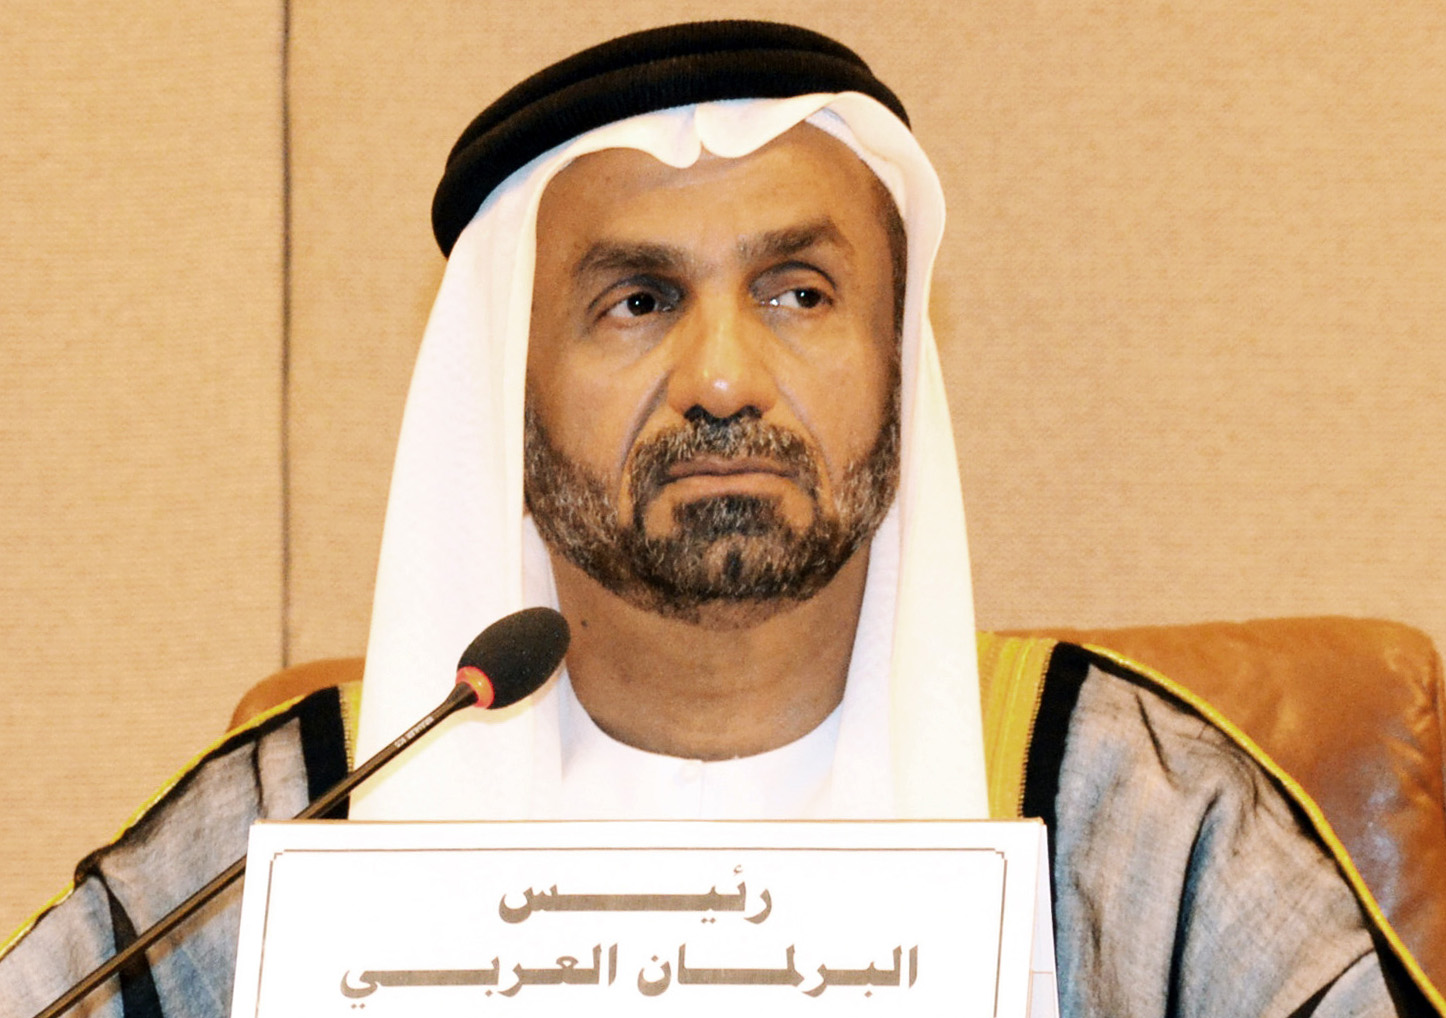 President of the Arab Parliament Ahmad Al-Jarawan